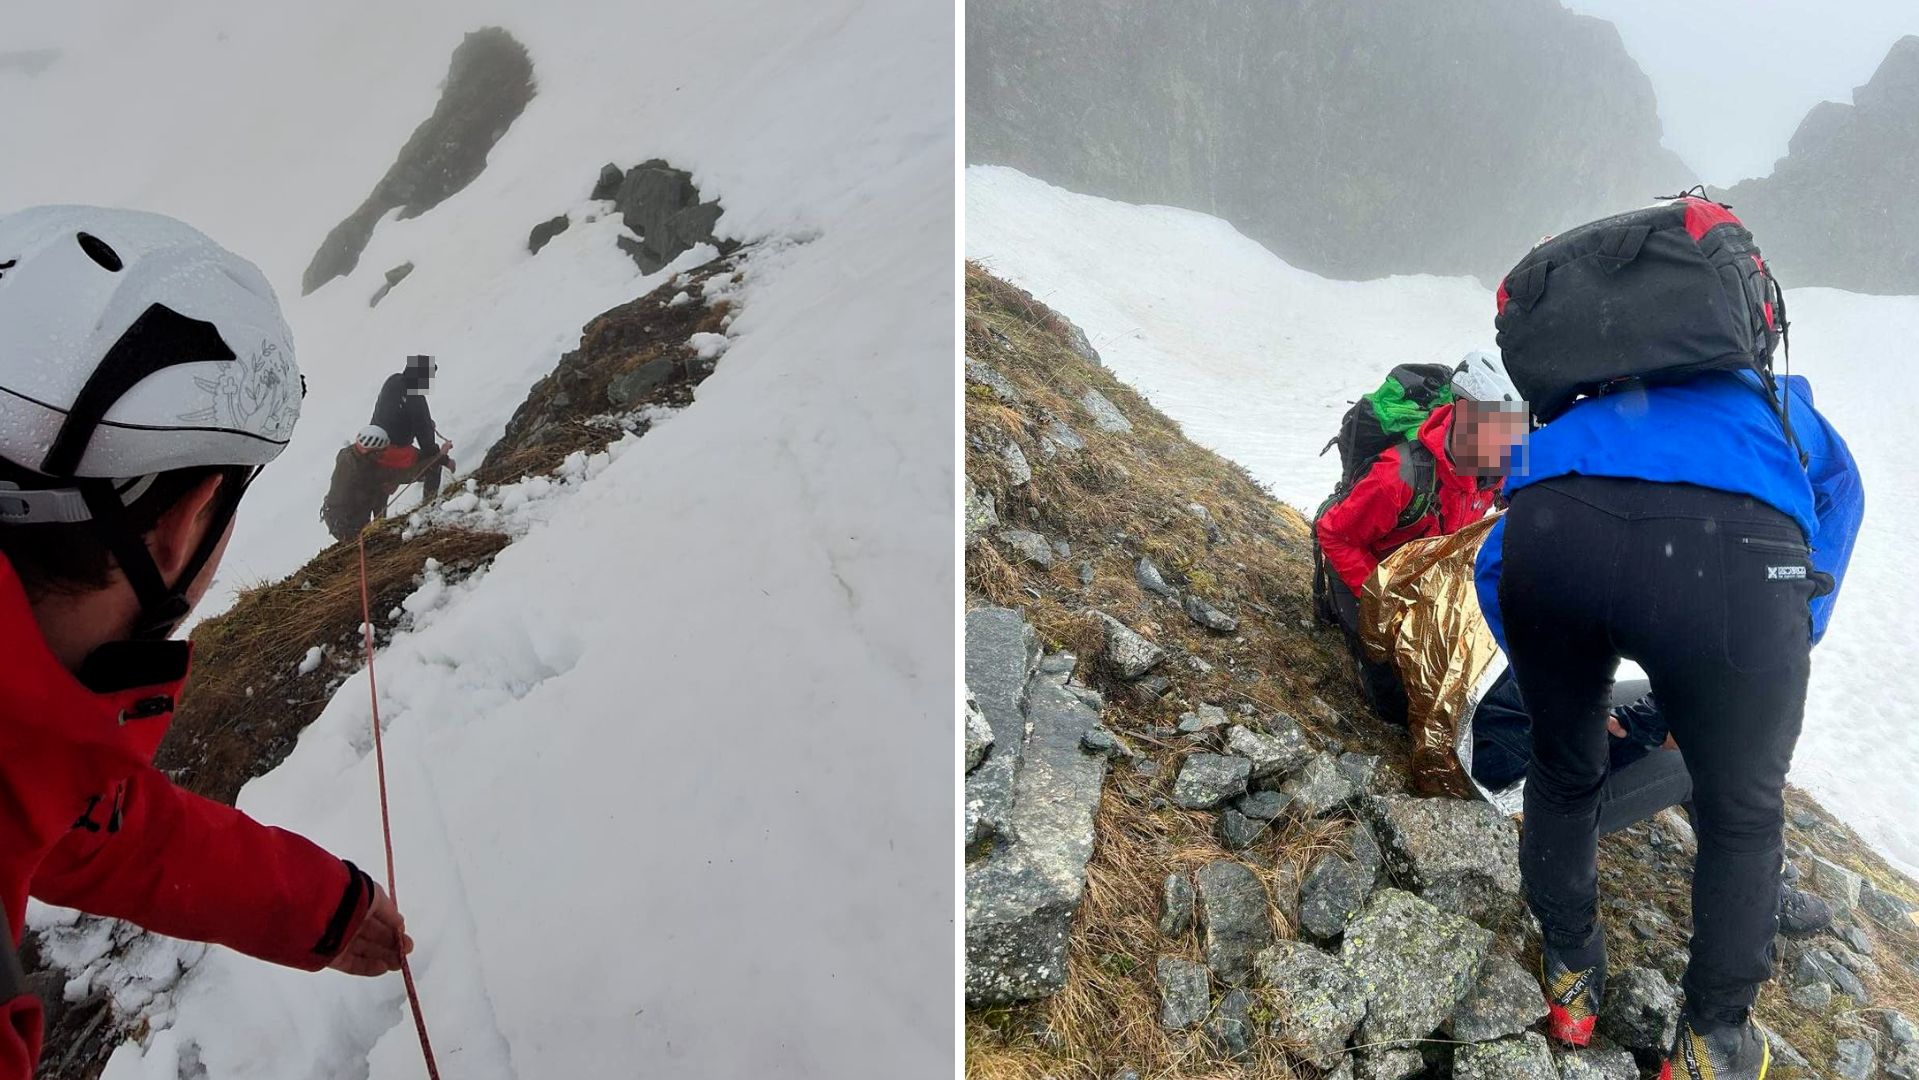 Dağ kurtarmacıları en olumsuz hava koşullarında yaralı adama tırmandılar. (Bild: Bergrettung Oetz, Krone KREATIV)